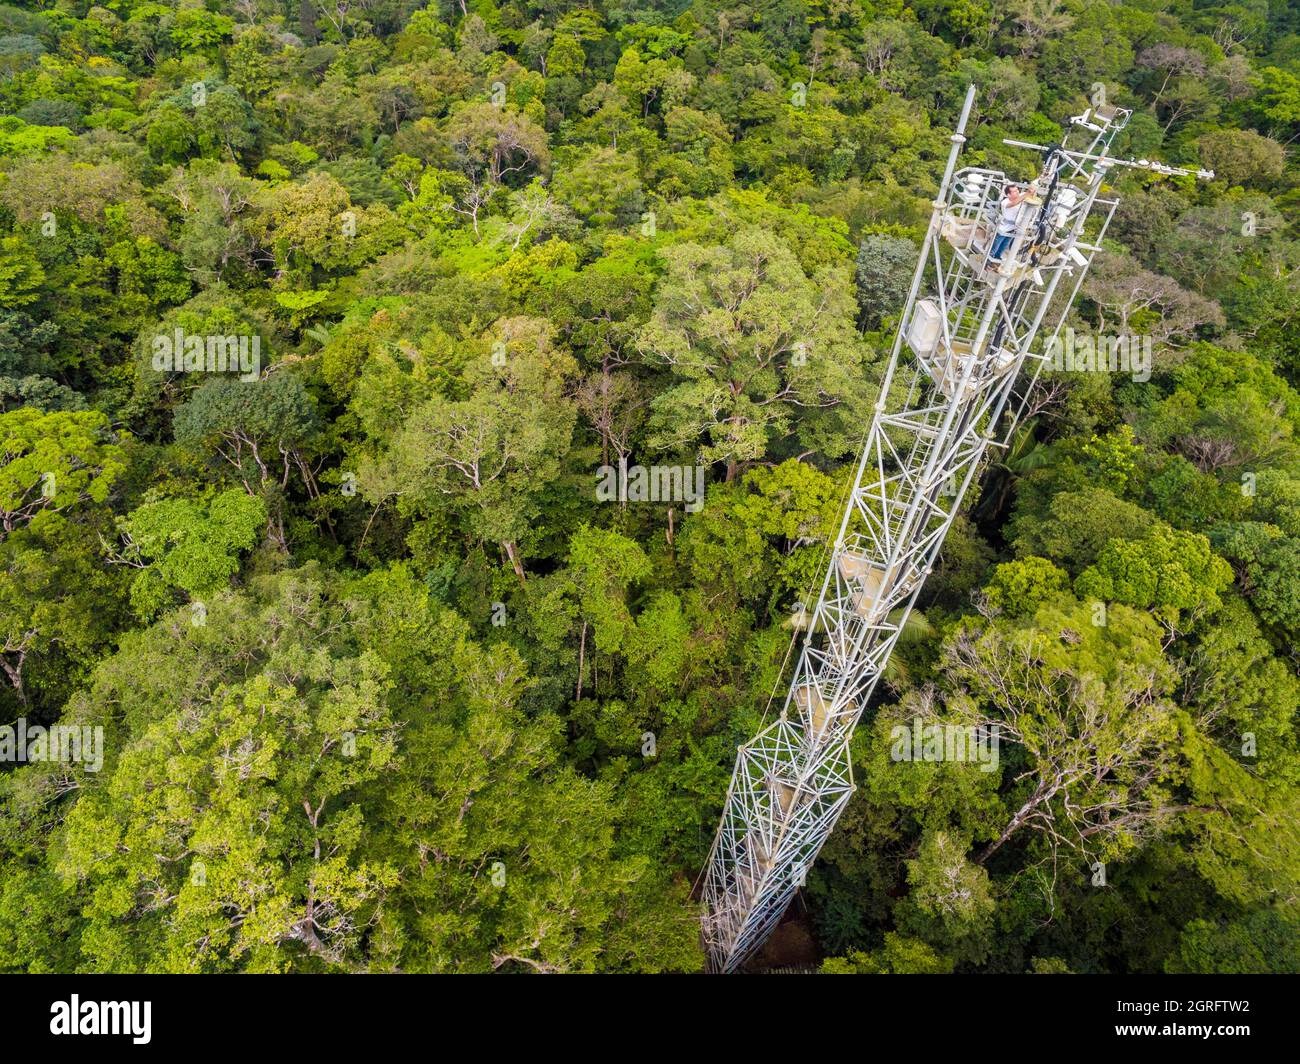 Station de recherche France, Guyane française, Kourou, Paracou (gérée par le Cirad) étudiant les échanges de gaz (cycle du carbone) entre les différentes couches de la forêt tropicale, vue aérienne de la tour de Guyaflux (vue aérienne) Banque D'Images